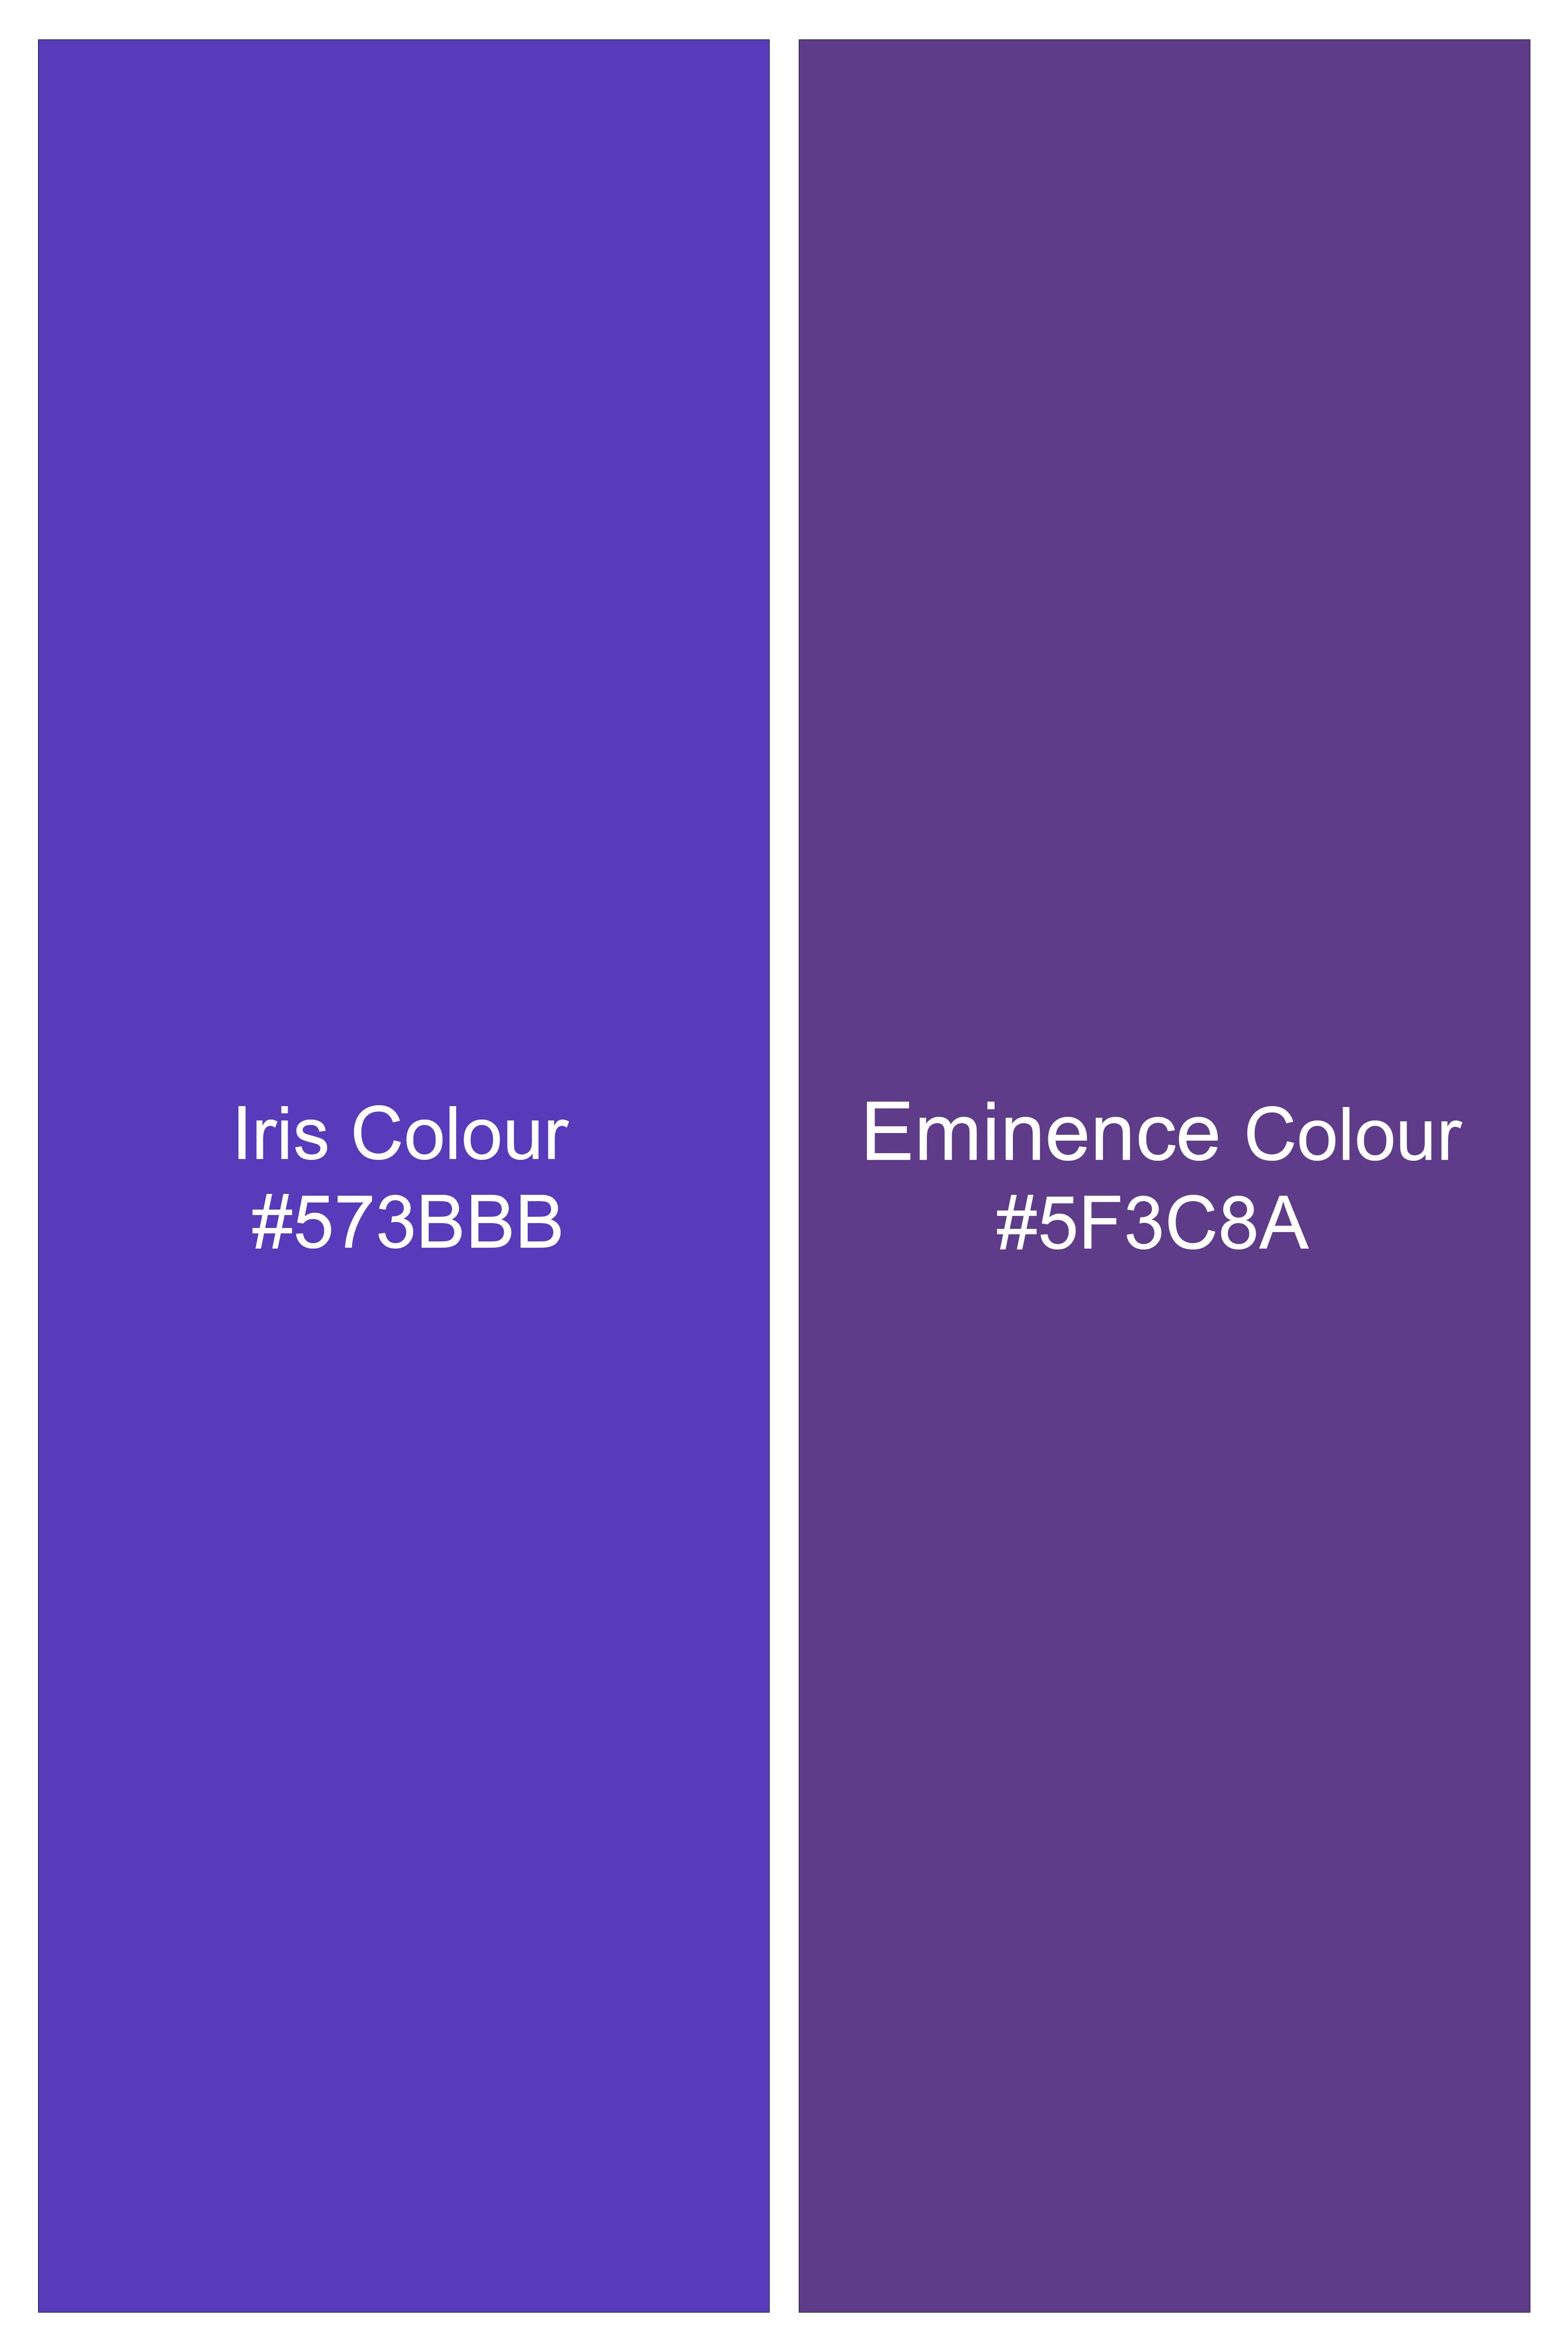 Iris Blue with Eminence Purple Embroidered Chambray Designer Kurta Shirt 6315-KS-E213-38, 6315-KS-E213-H-38, 6315-KS-E213-39, 6315-KS-E213-H-39, 6315-KS-E213-40, 6315-KS-E213-H-40, 6315-KS-E213-42, 6315-KS-E213-H-42, 6315-KS-E213-44, 6315-KS-E213-H-44, 6315-KS-E213-46, 6315-KS-E213-H-46, 6315-KS-E213-48, 6315-KS-E213-H-48, 6315-KS-E213-50, 6315-KS-E213-H-50, 6315-KS-E213-52, 6315-KS-E213-H-52